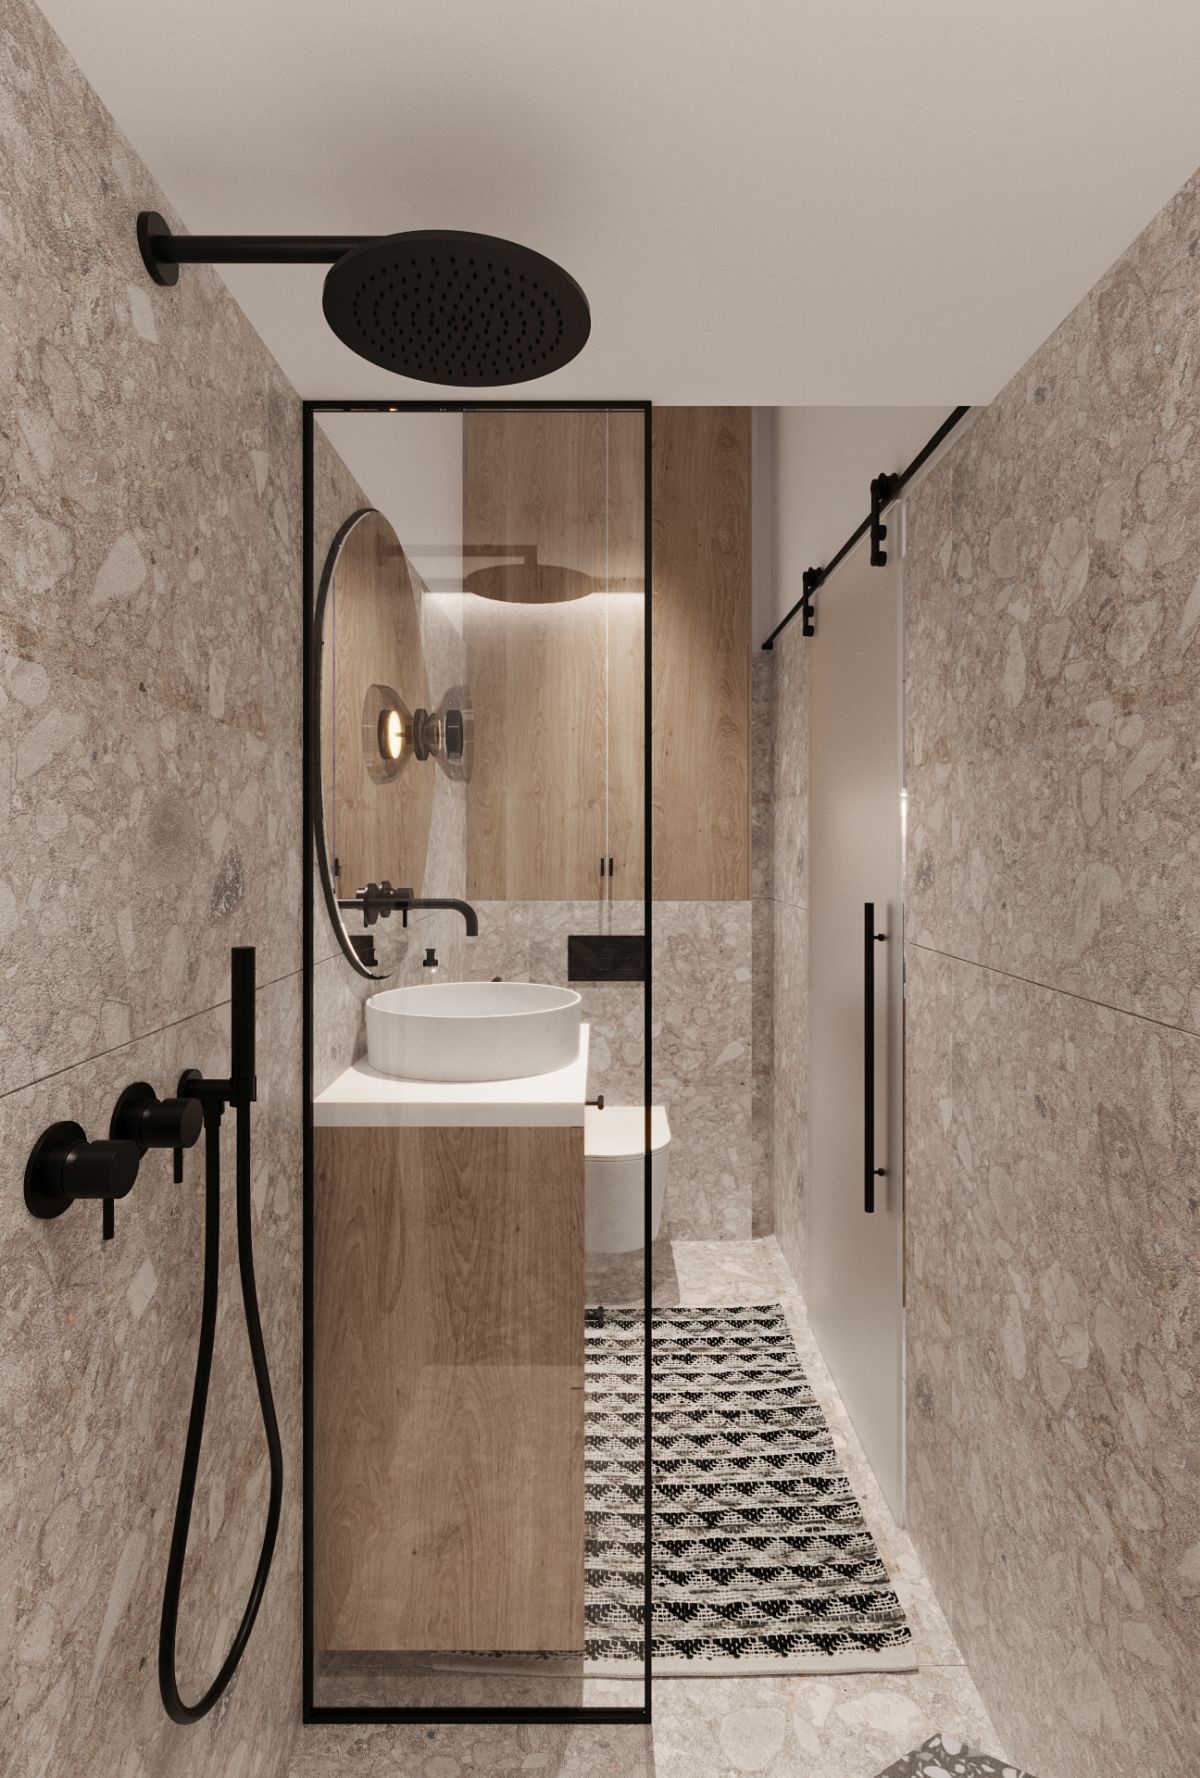 A legmodernebb design a fürdőben terrazzo mintás tapéta burkolattal